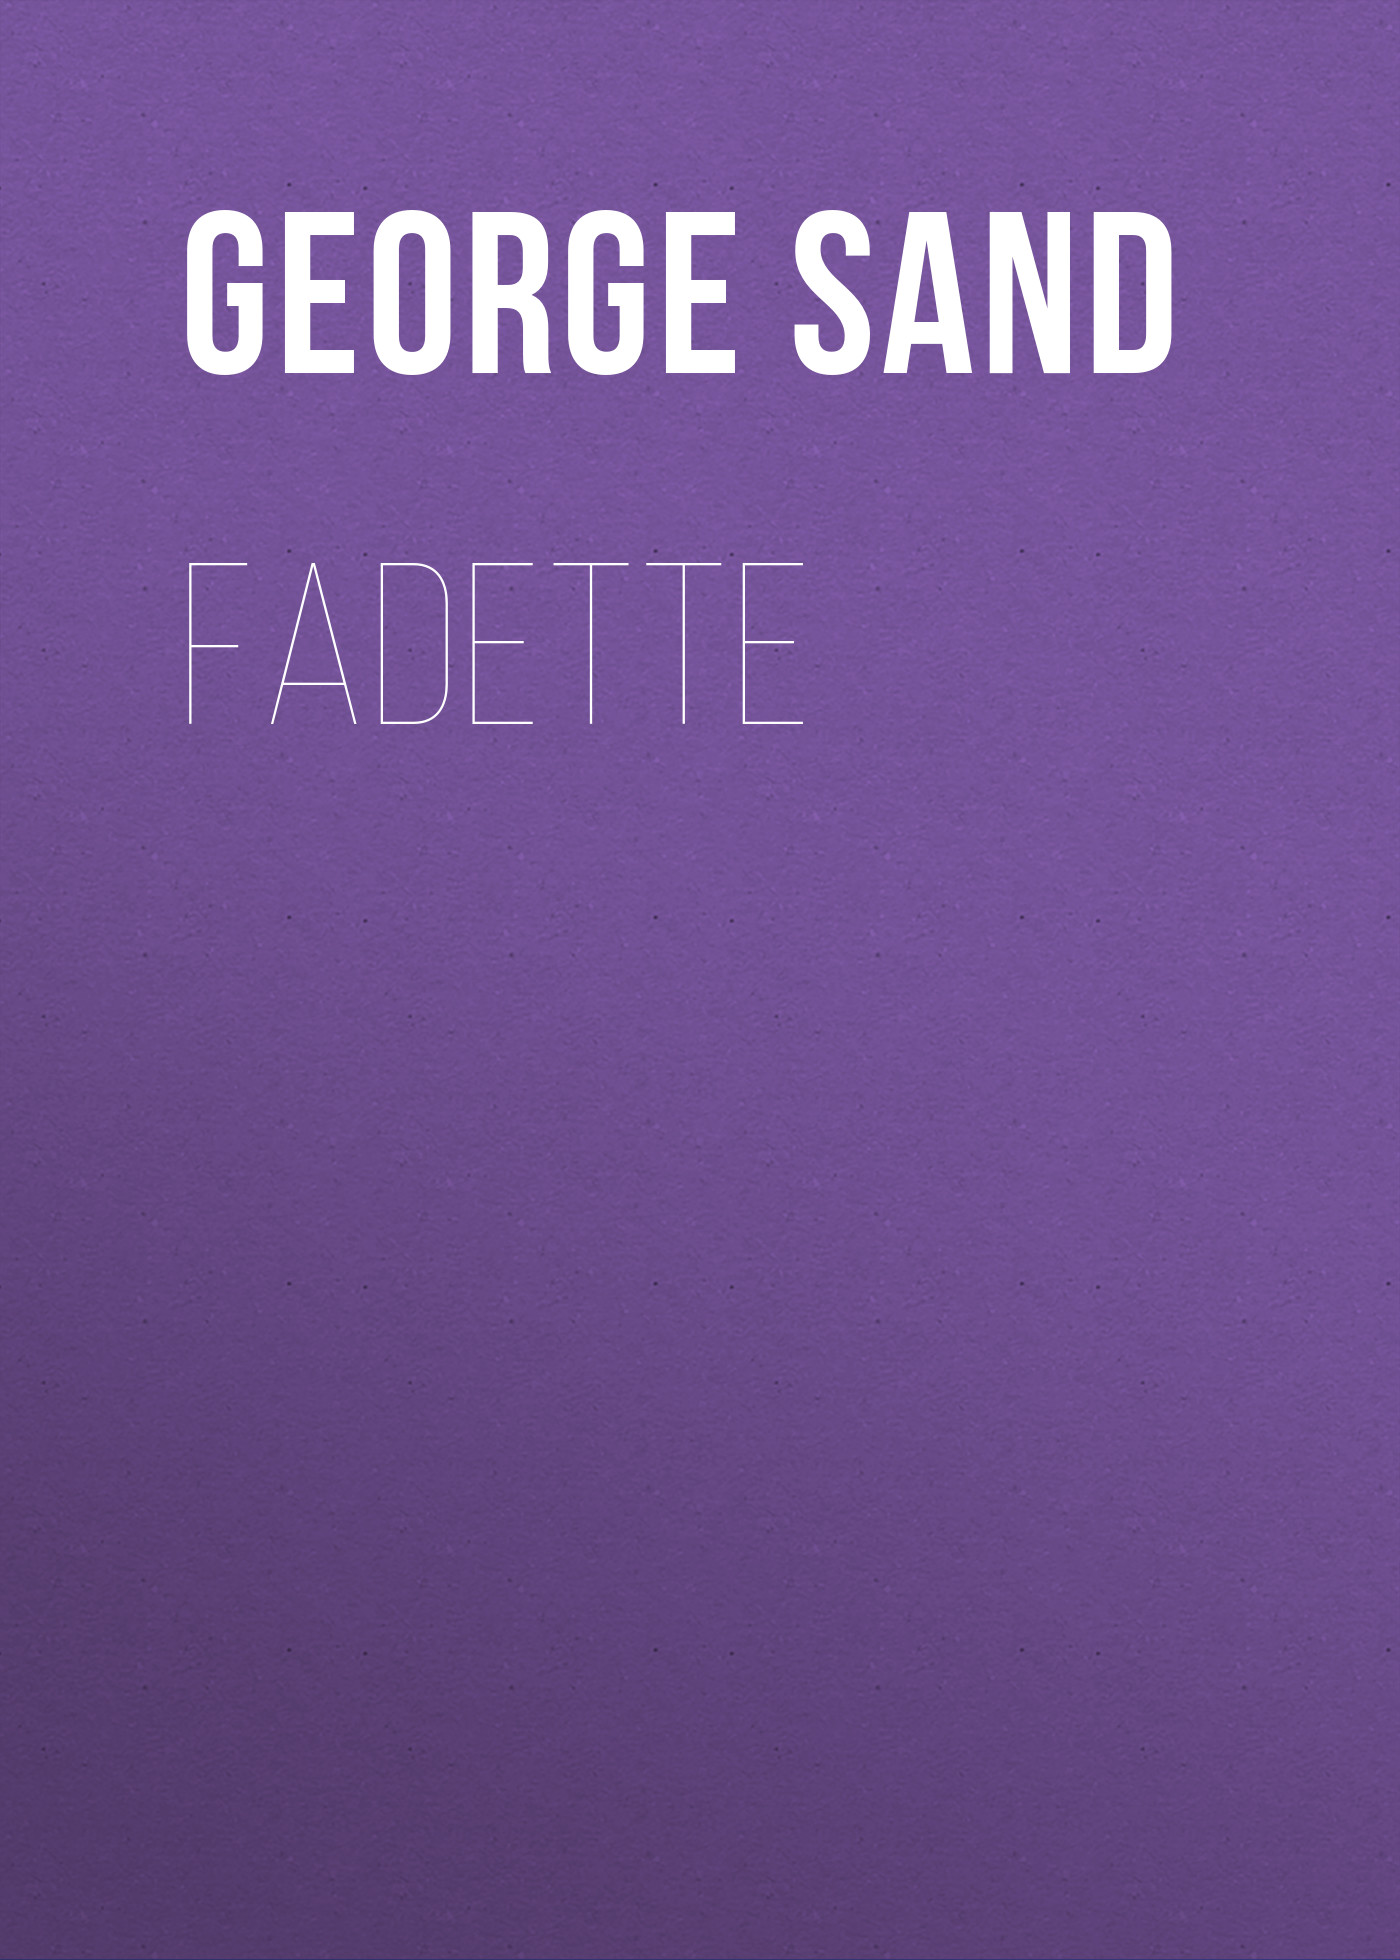 Книга Fadette из серии , созданная George Sand, может относится к жанру Зарубежная классика. Стоимость электронной книги Fadette с идентификатором 48631940 составляет 0 руб.